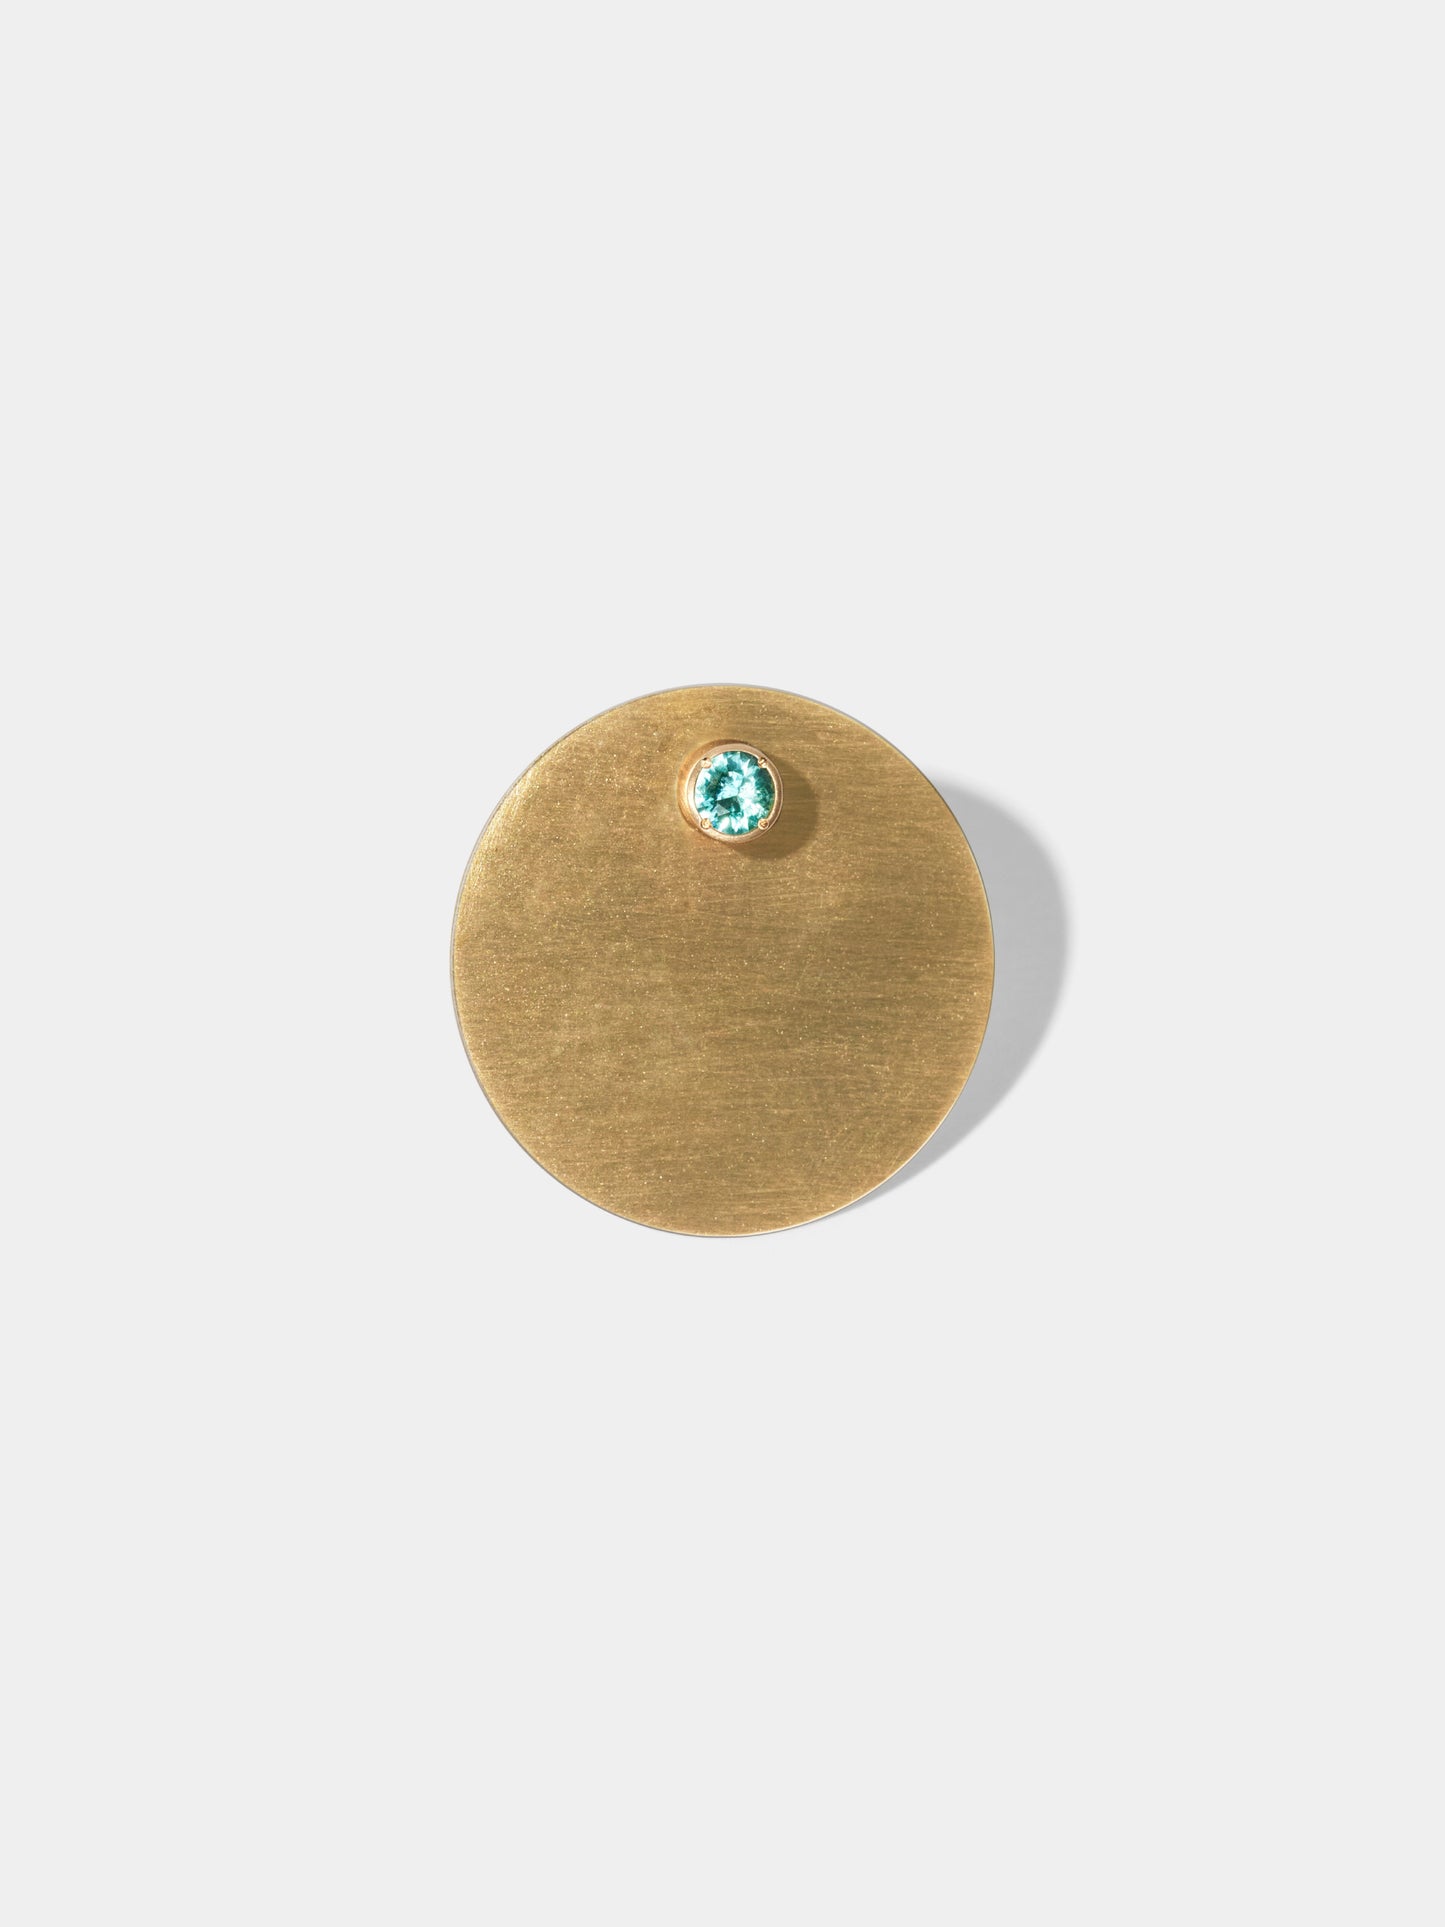 ASTERISM_Pierced Earring_Full Moon (満月) / Emerald